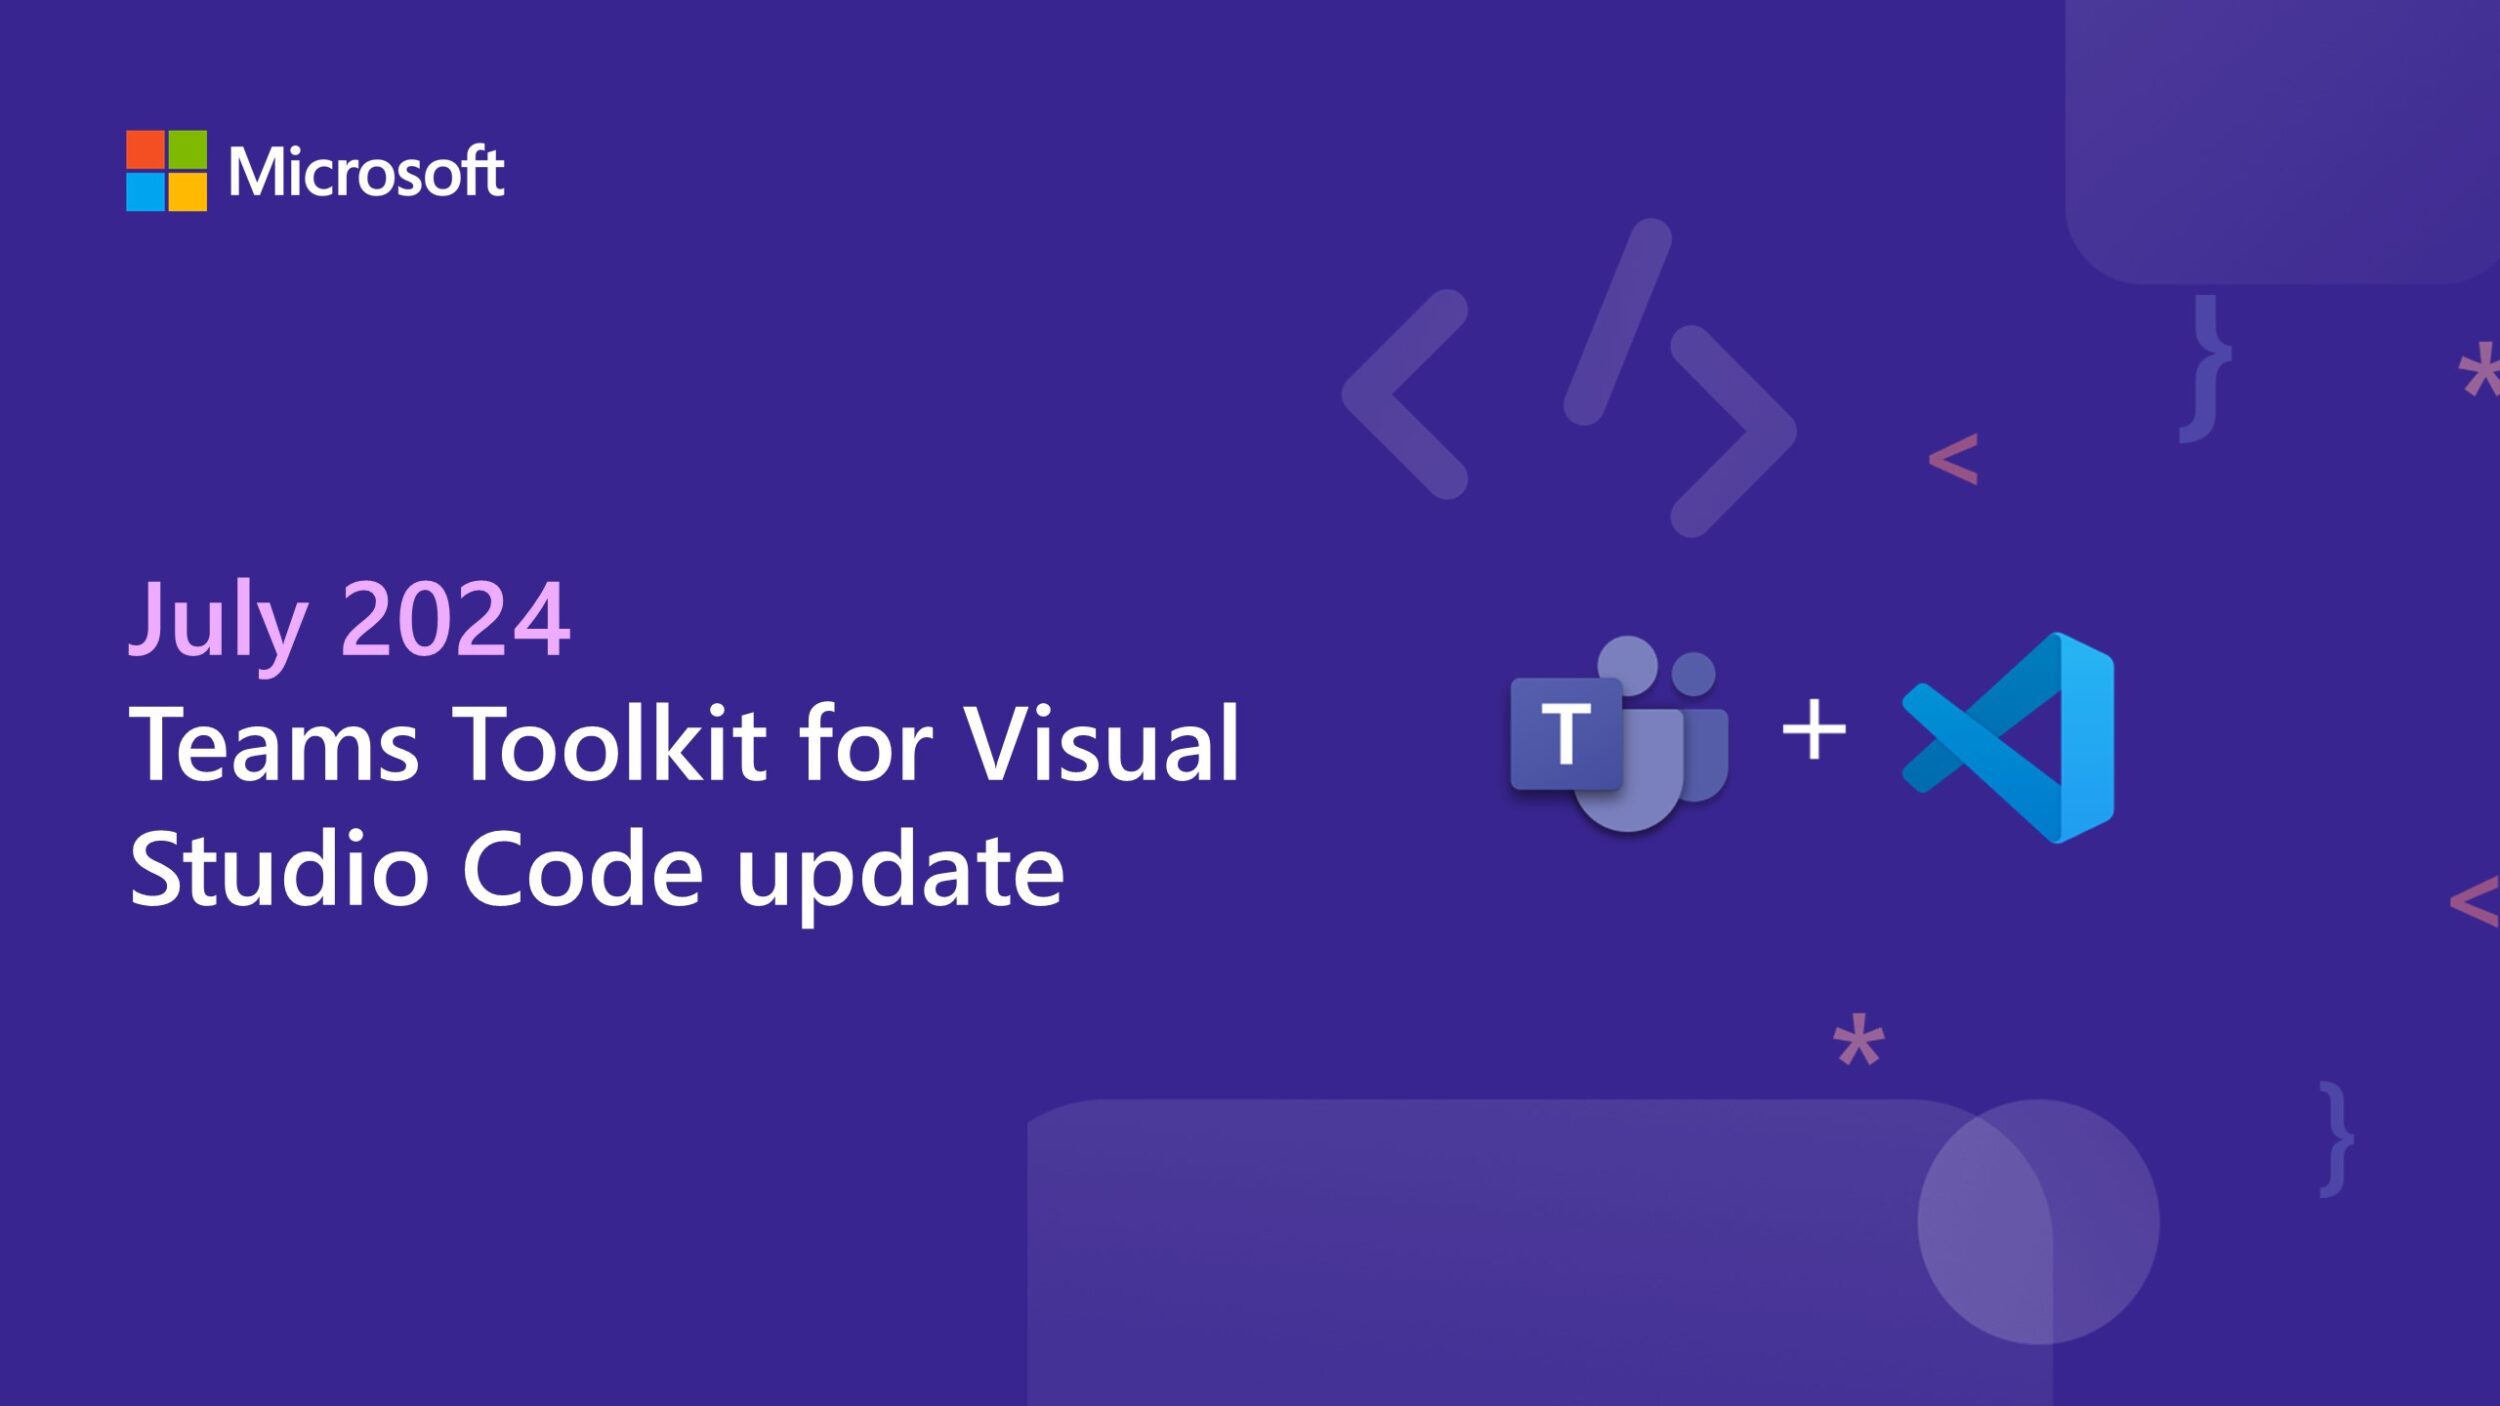 Teams Toolkit for Visual Studio Code update – July 2024